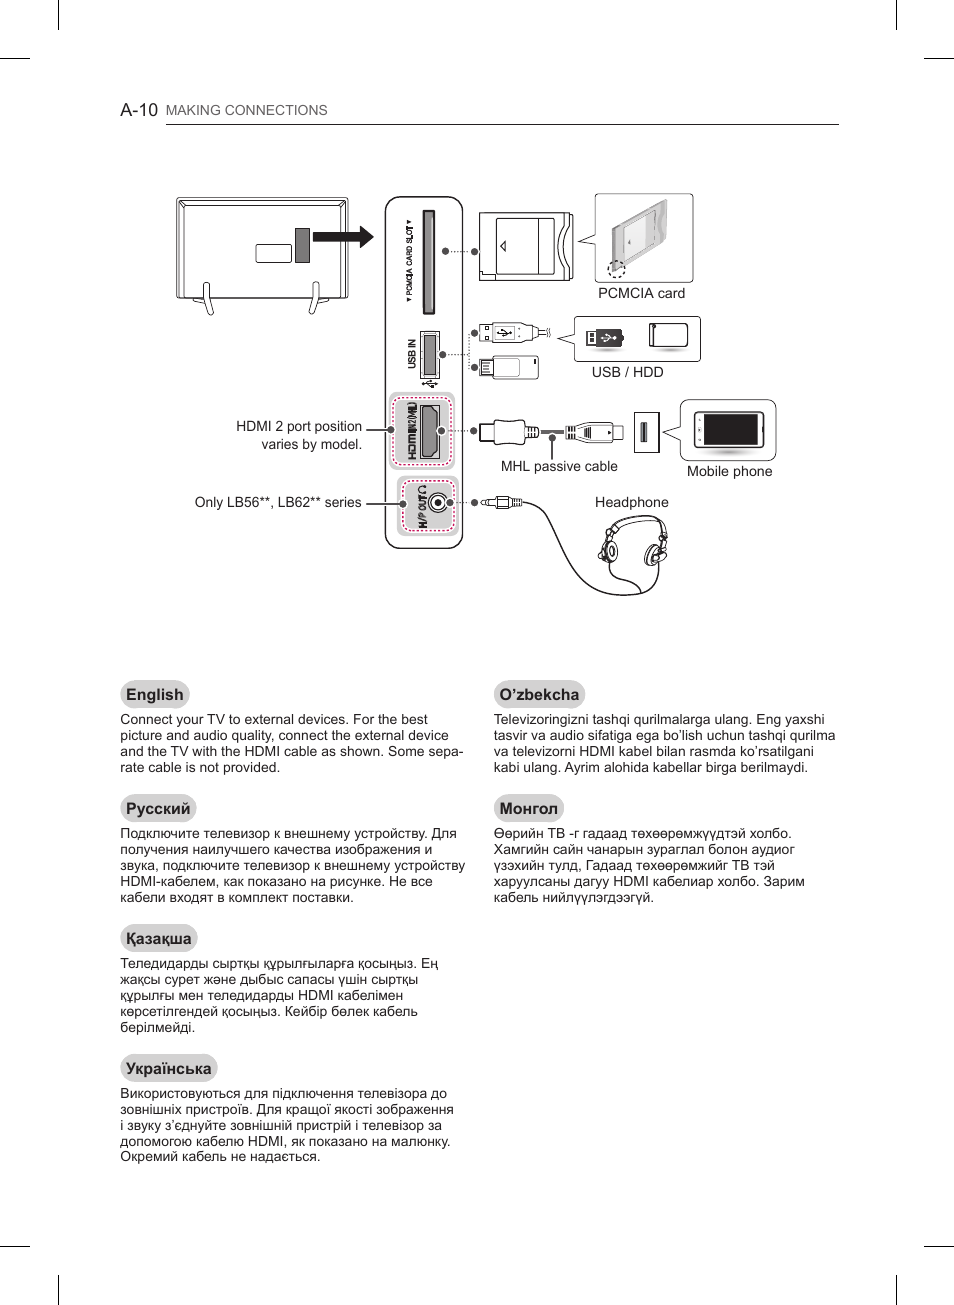 A-10 | Инструкция по эксплуатации LG 32LB561U | Страница 10 / 270